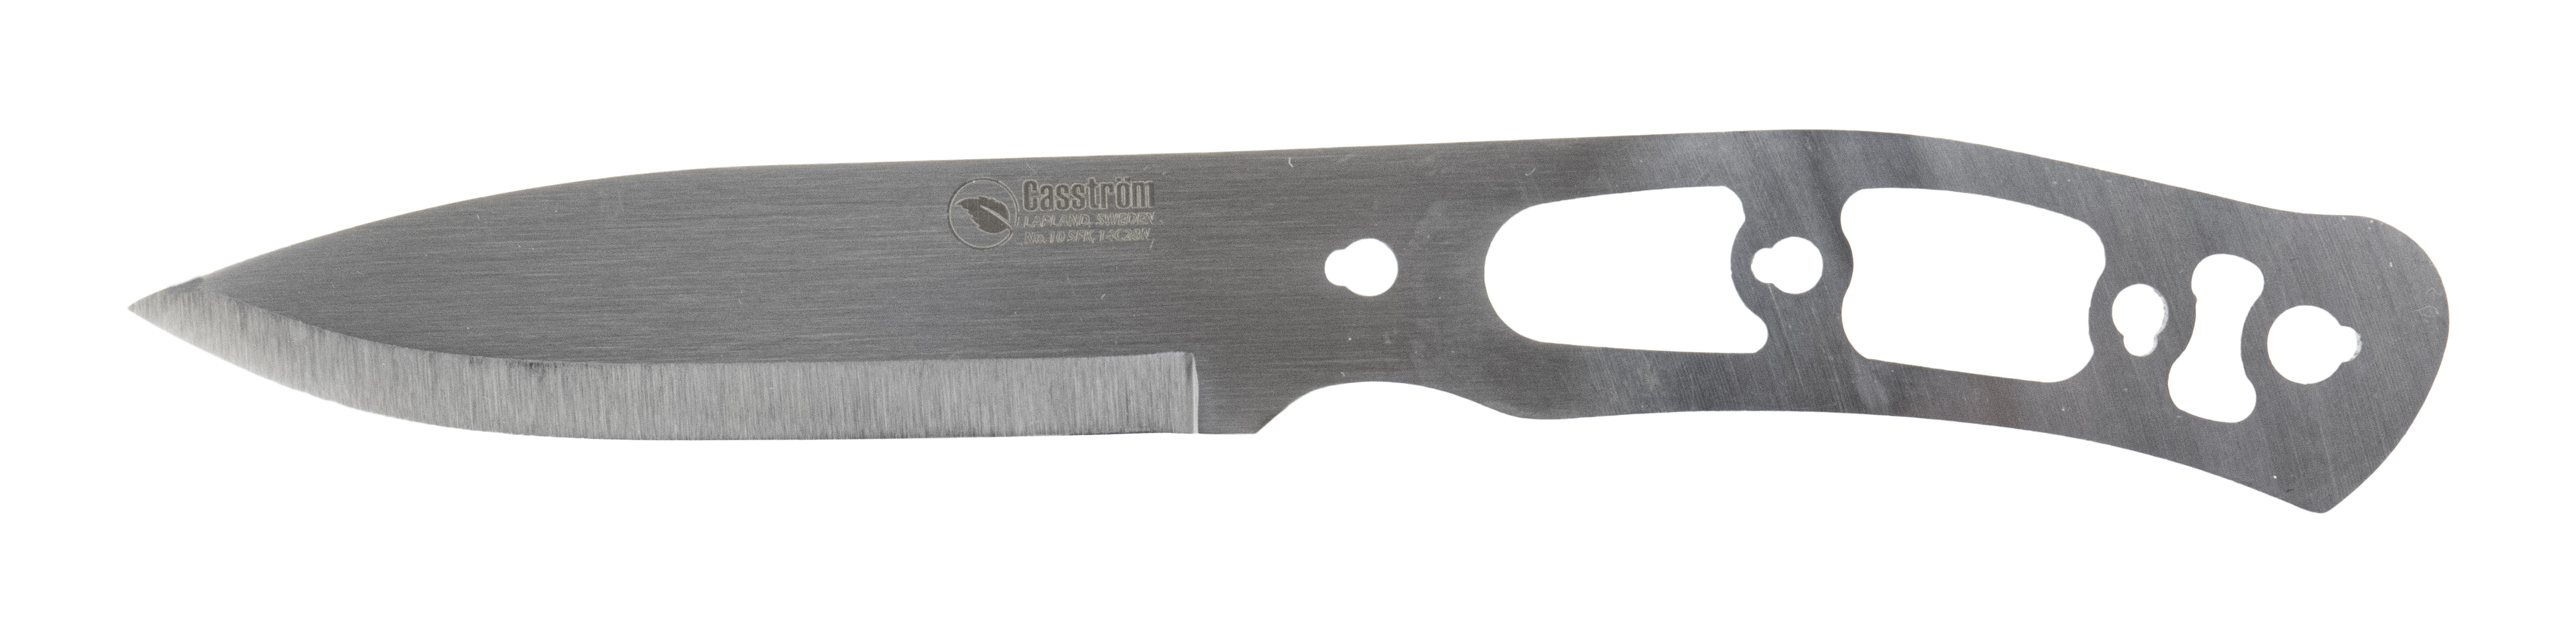 Casstrom No.10 SFK Knife making kit